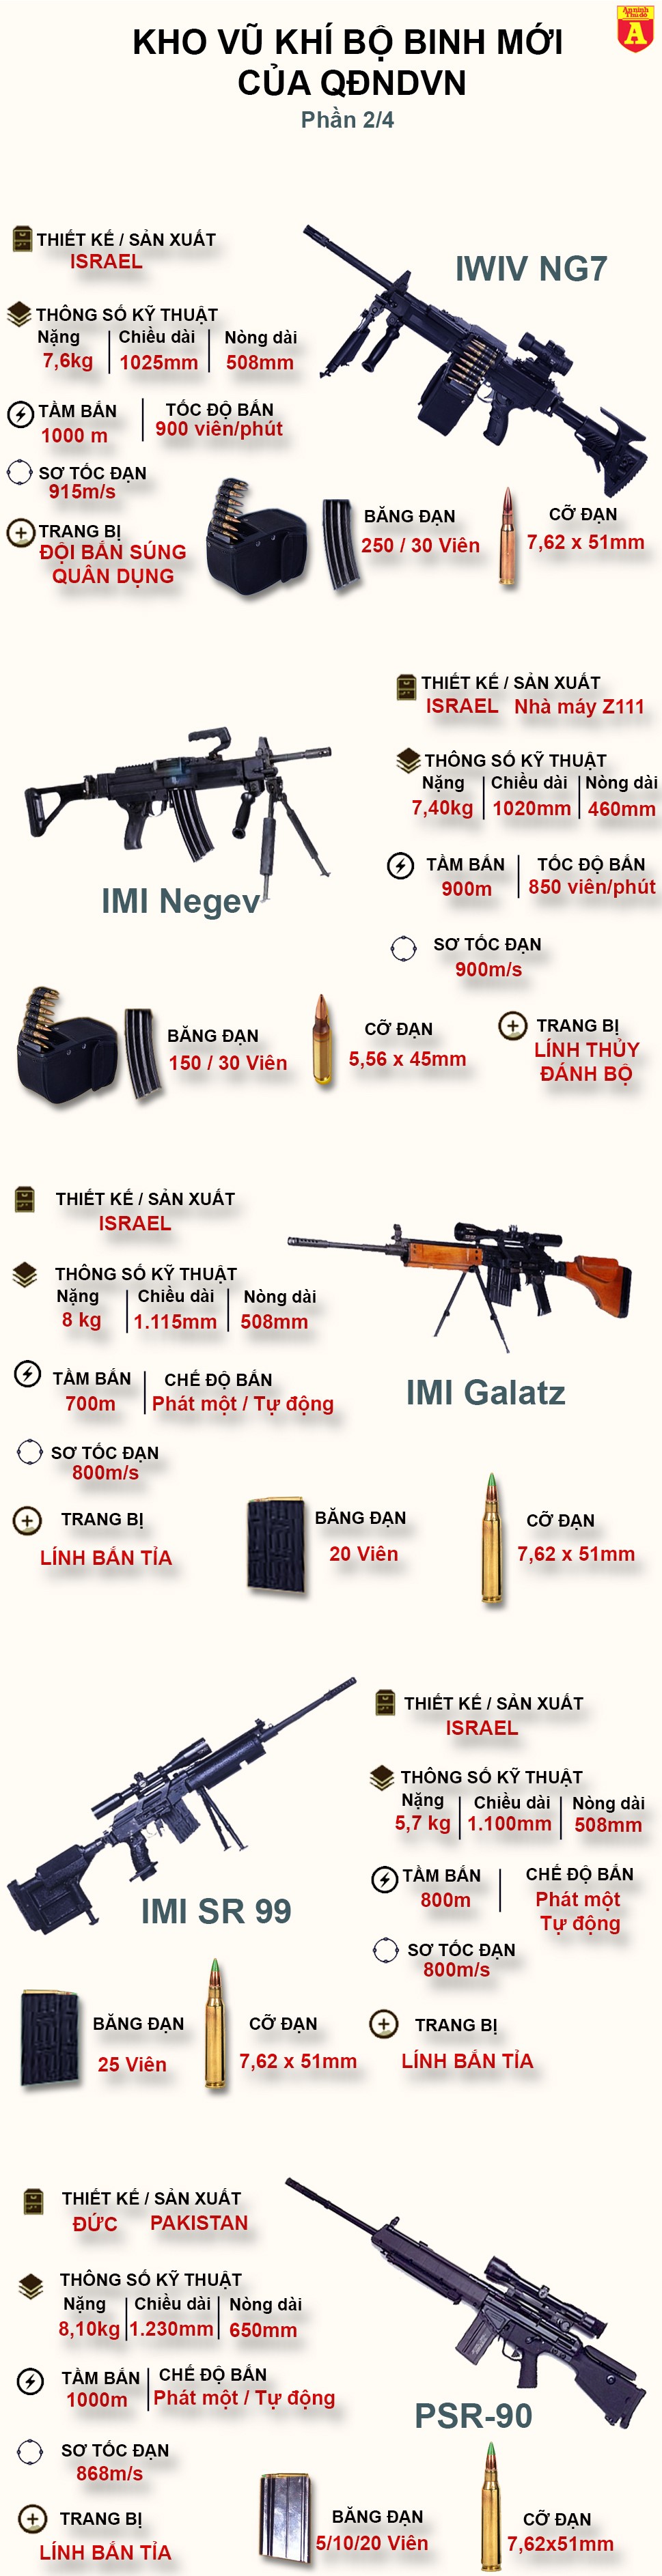 [Infographic] Kinh ngạc với những khẩu súng cực hiện đại Việt Nam vừa trang bị (2) ảnh 2